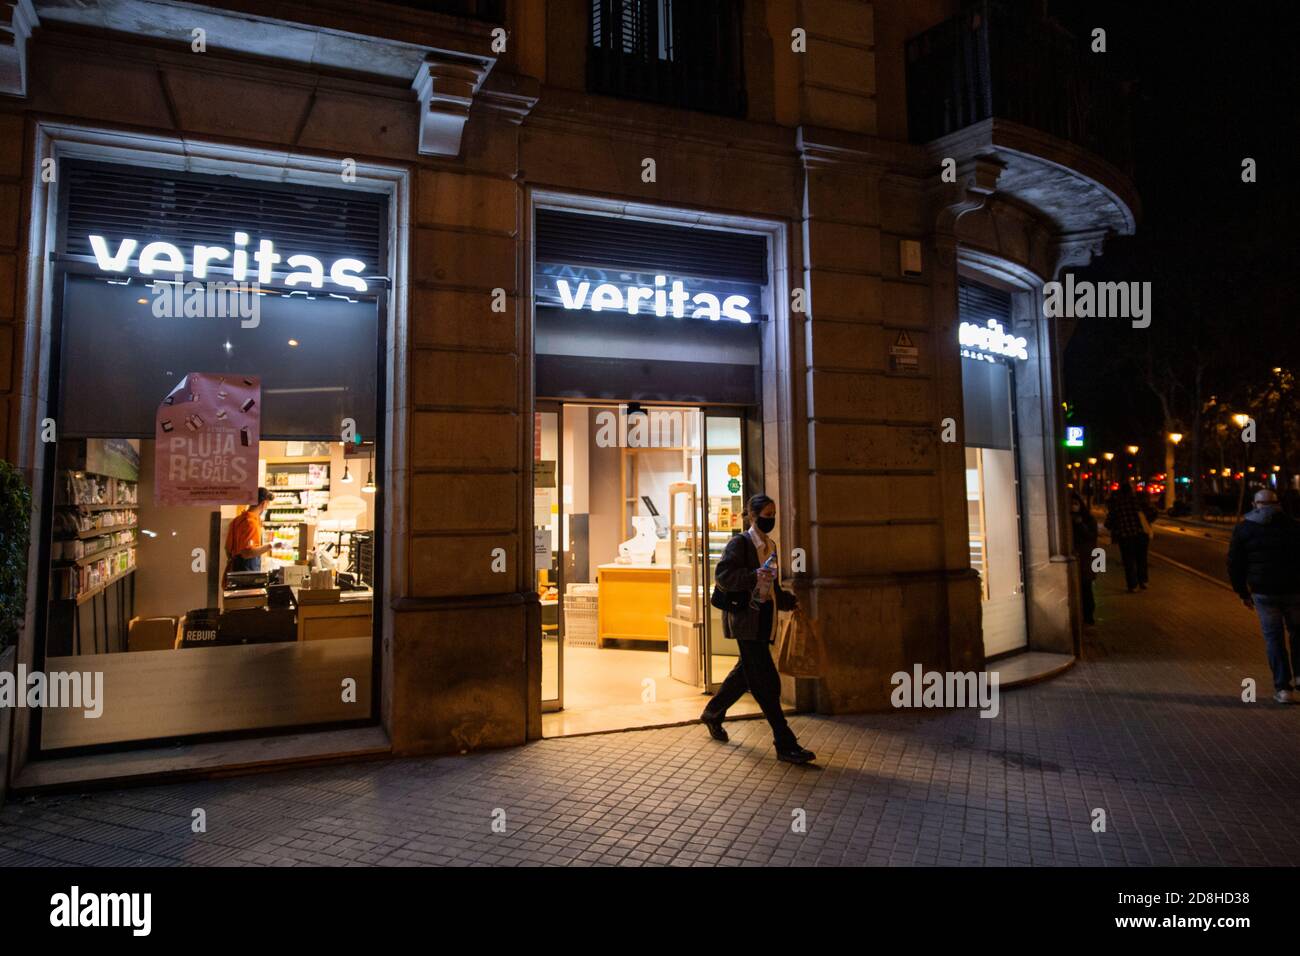 Barcelone, Espagne. 29.10.2020. Une femme quitte un magasin Veritas à l'heure exacte où les magasins devraient être fermés selon le nouveau couvre-feu Banque D'Images